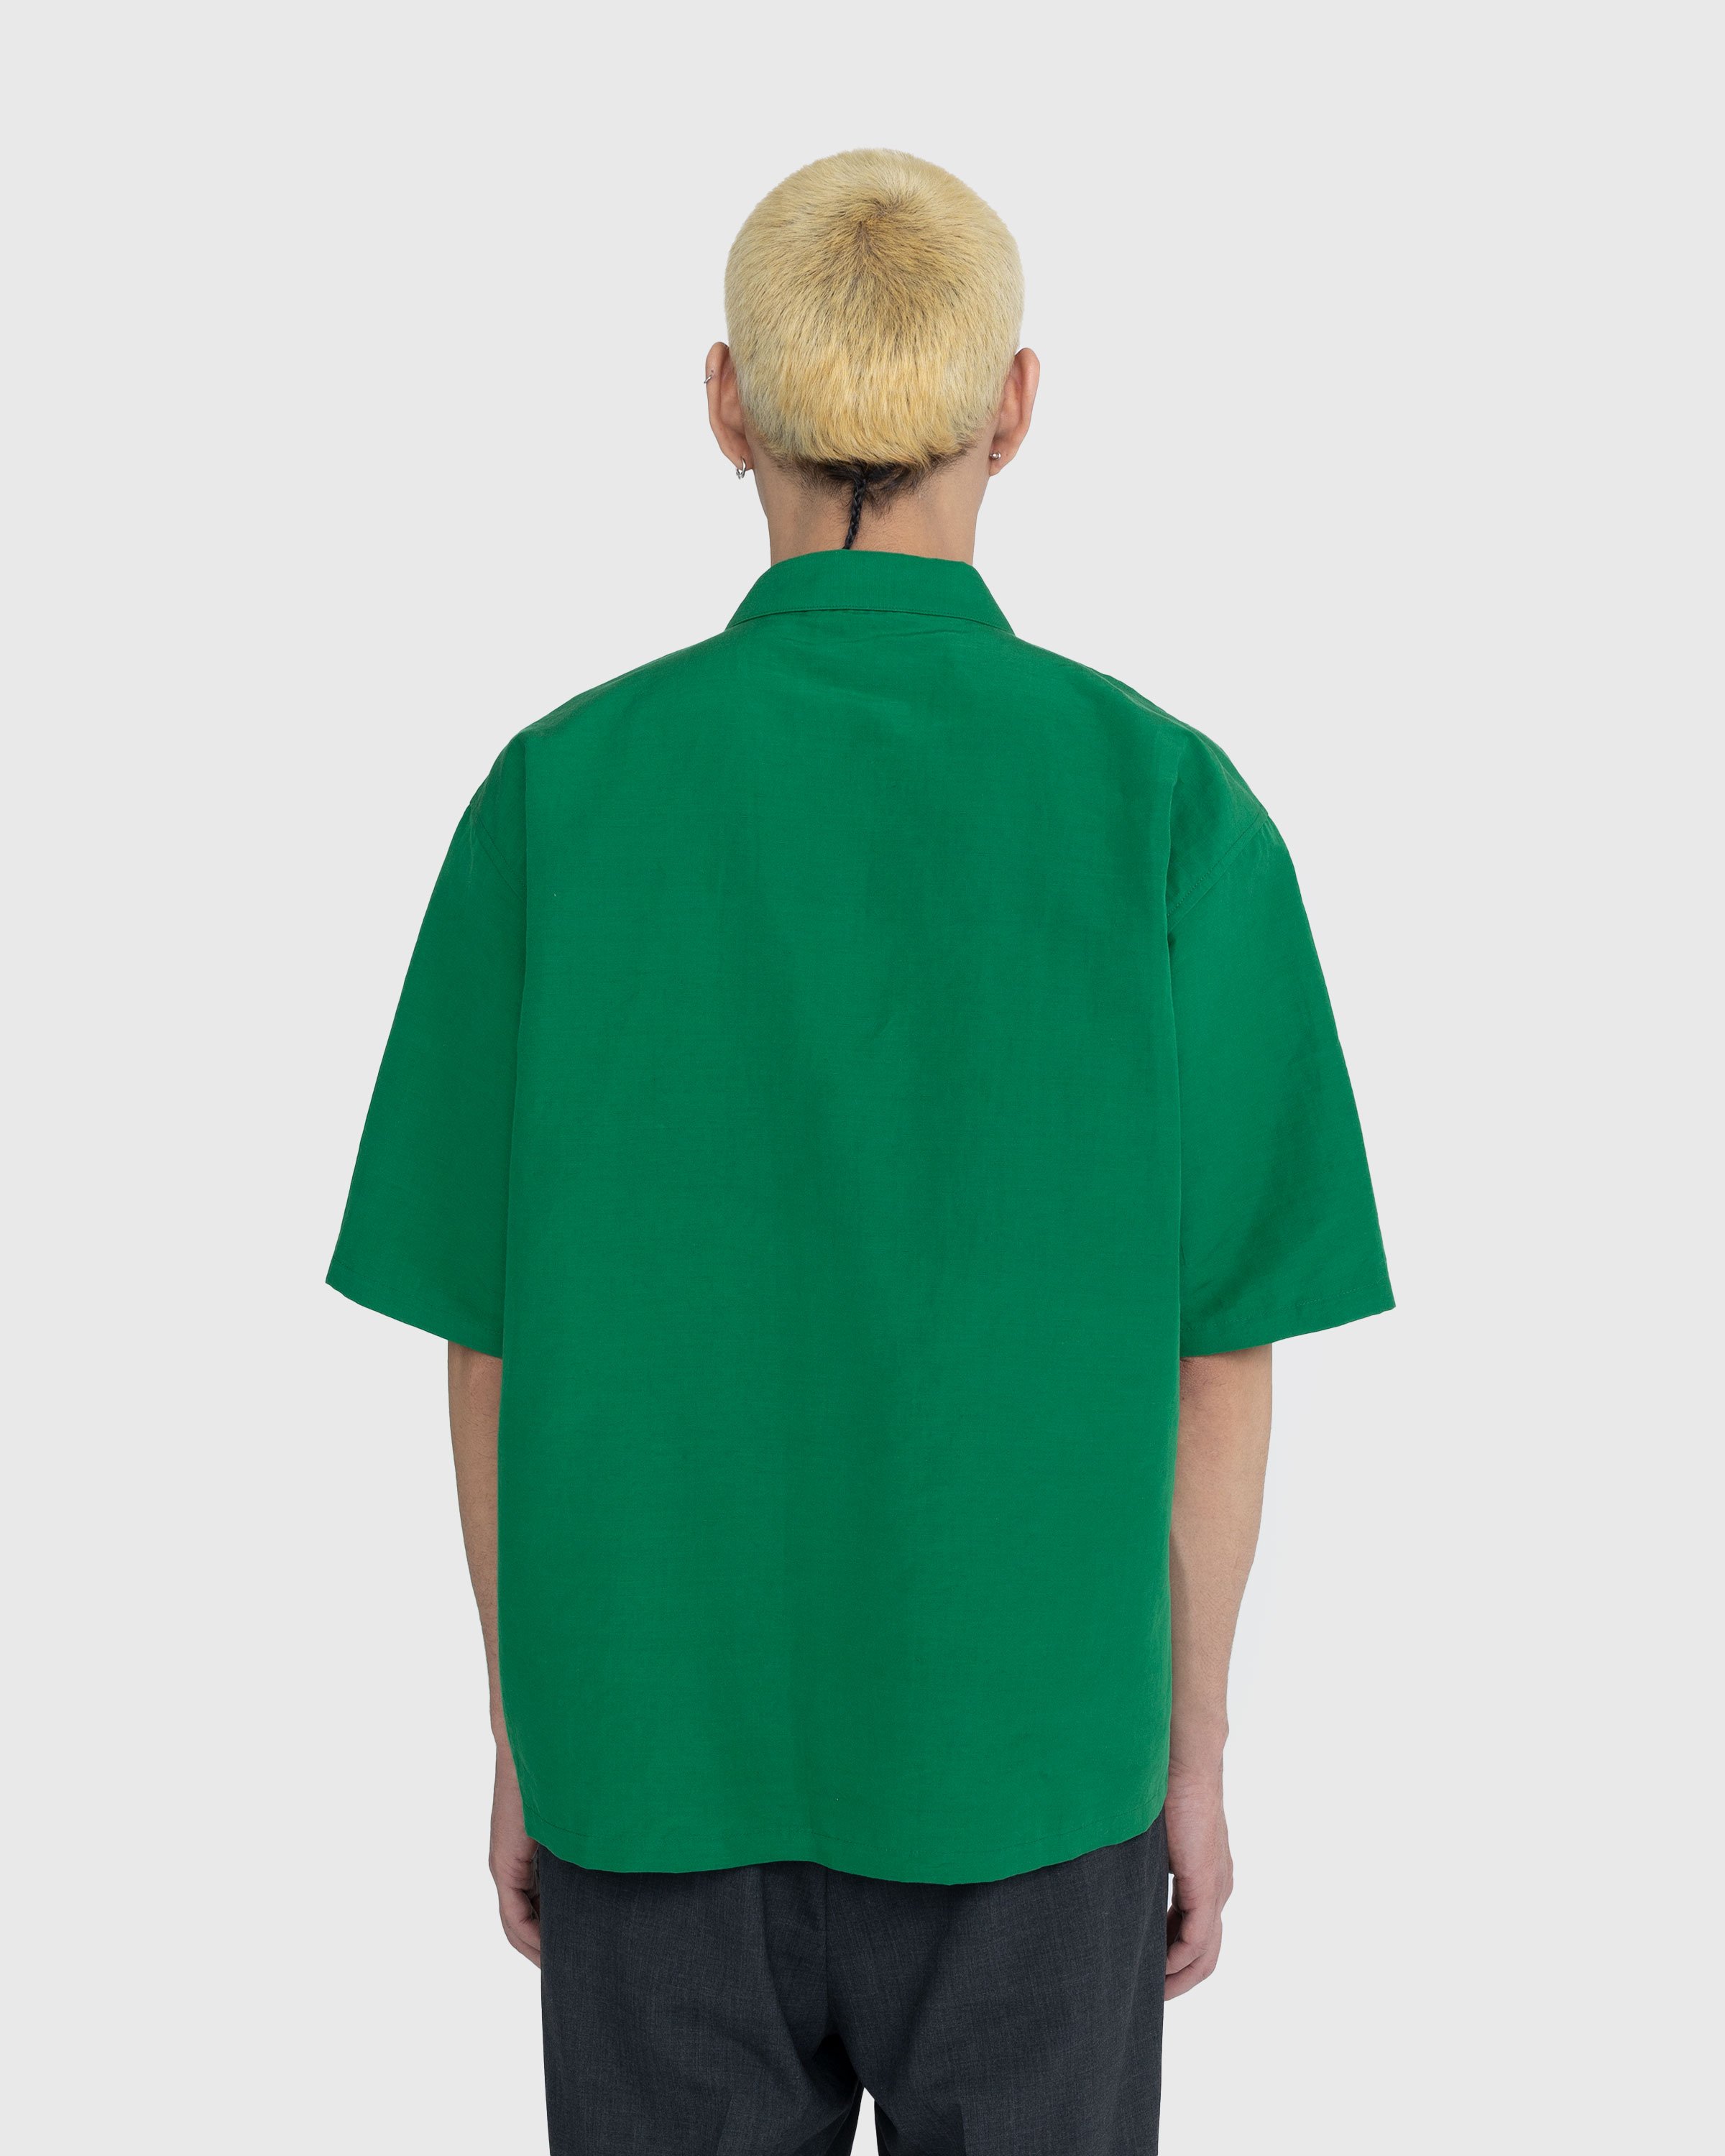 Auralee - High Density Finx Linen Weather Shirt Green - Clothing - Green - Image 3